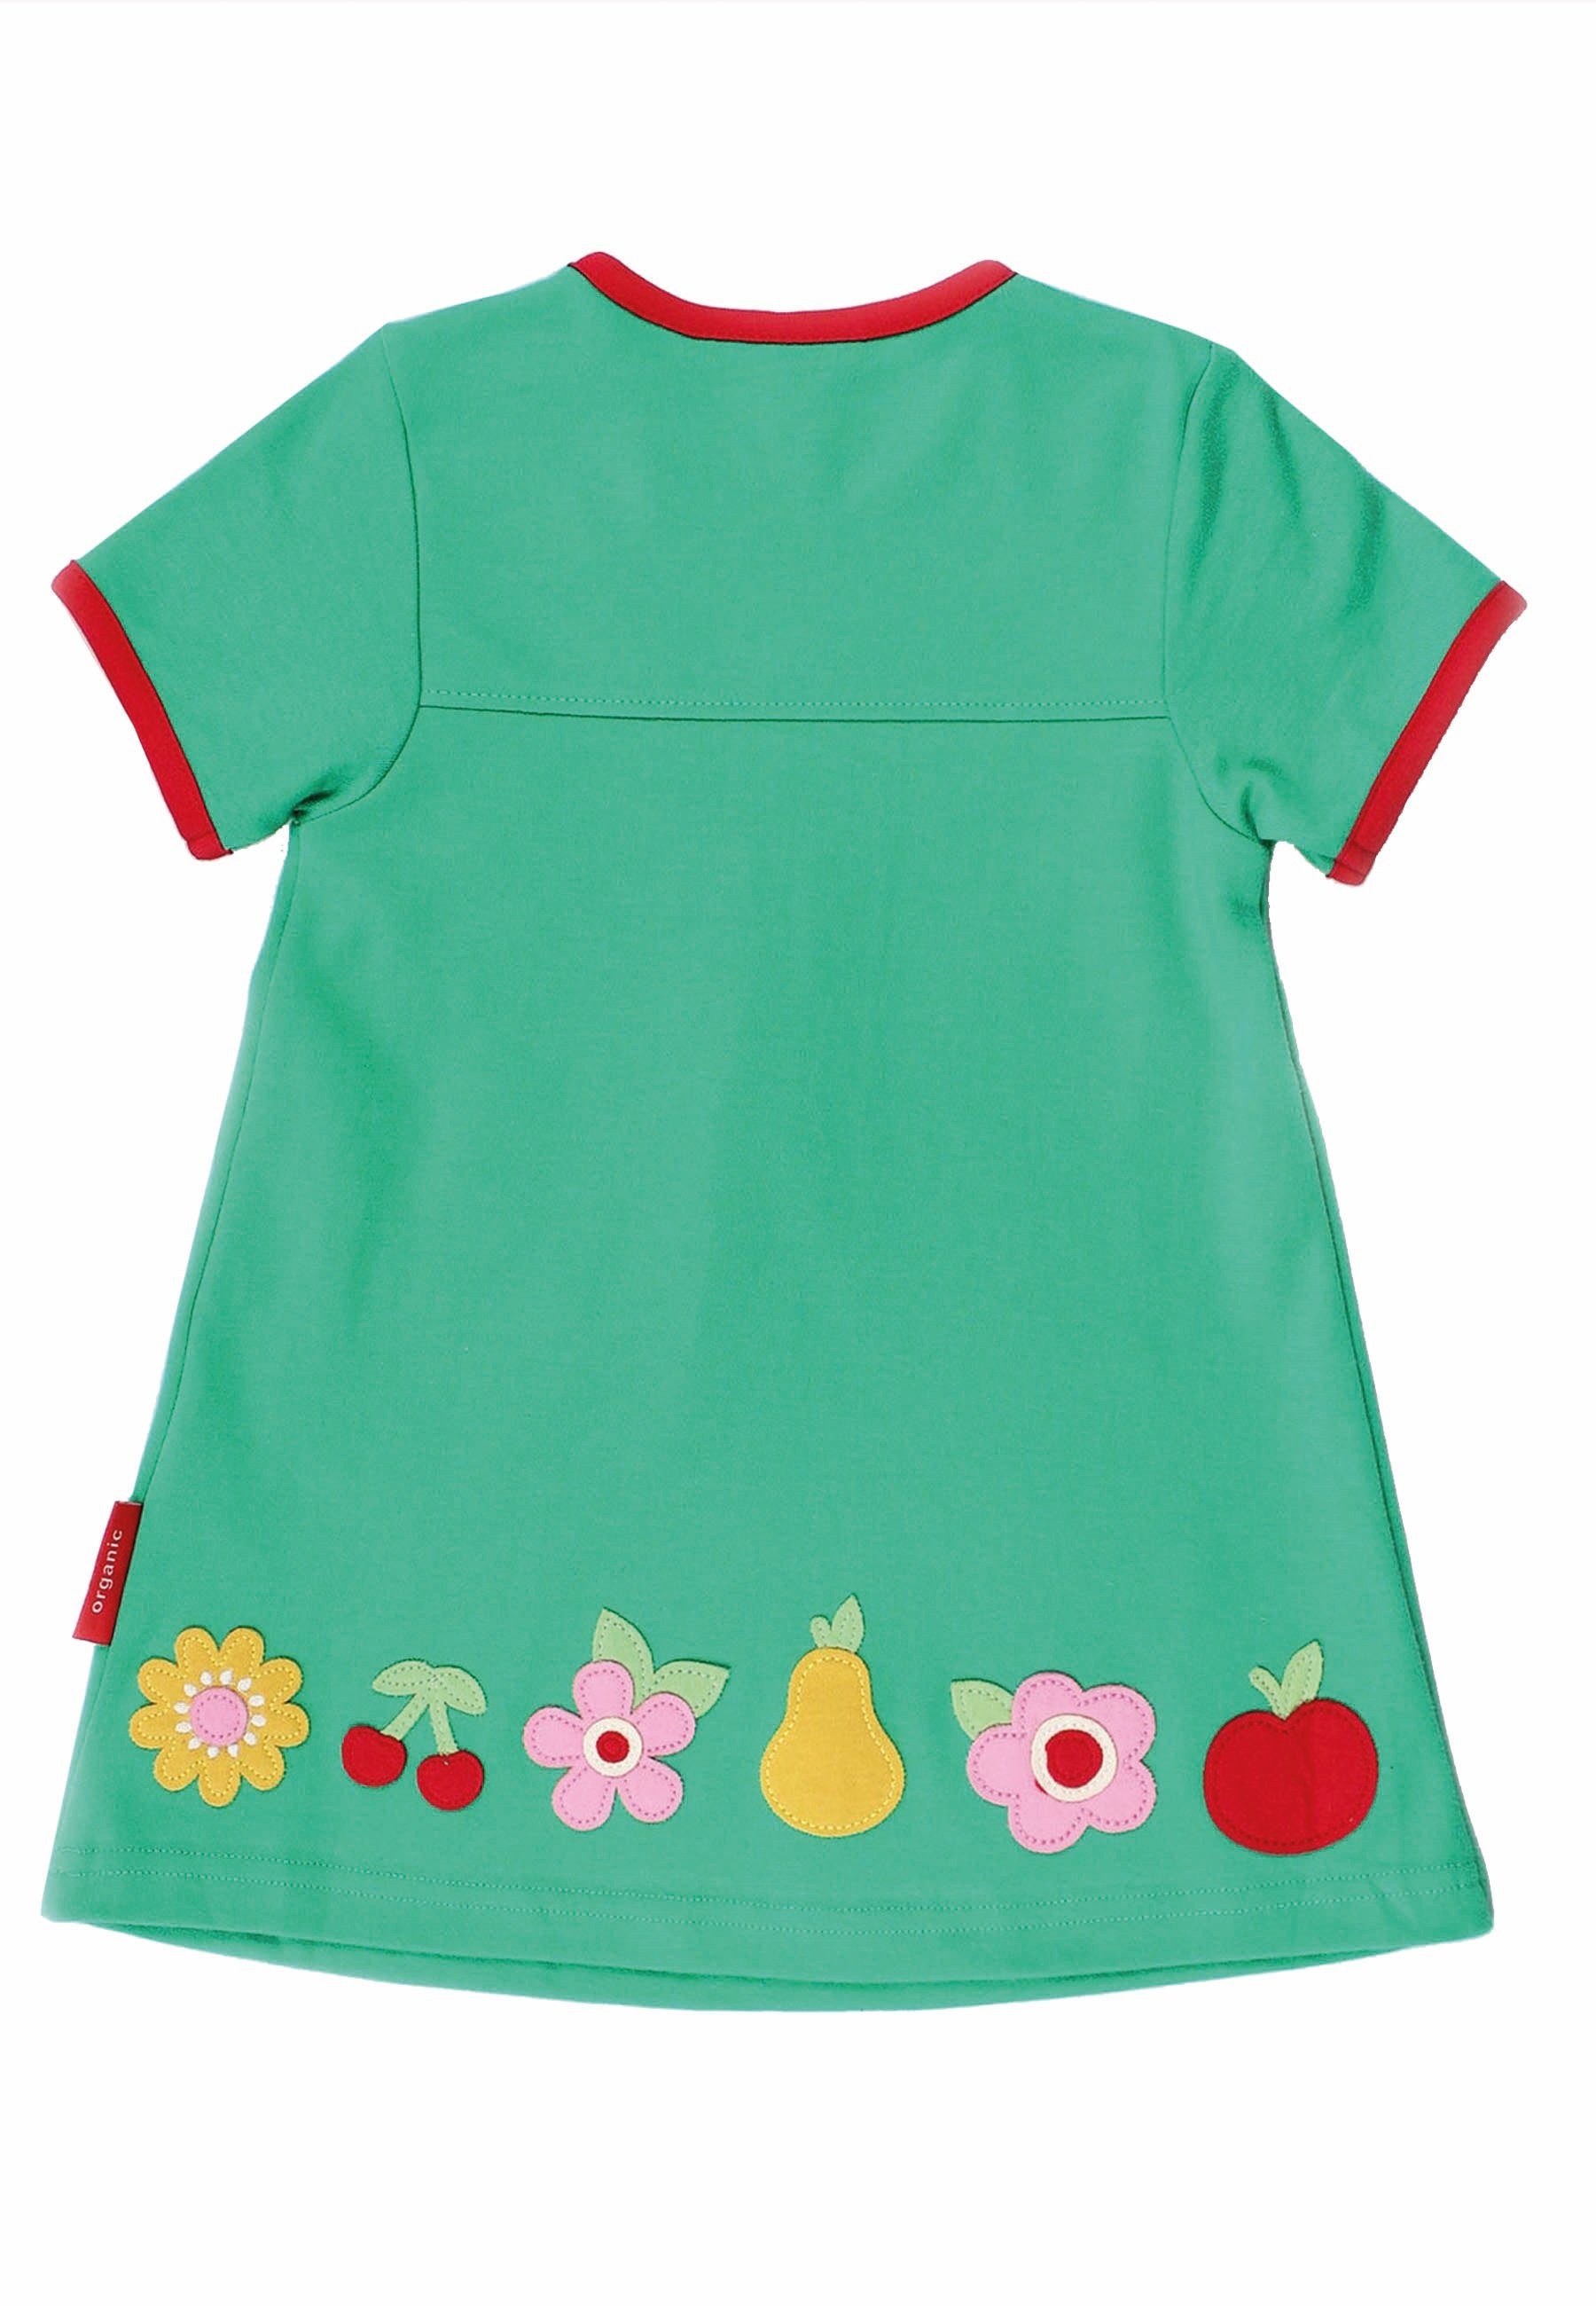 Kleid Applikation Toby mit Früchte Tiger Shirtkleid